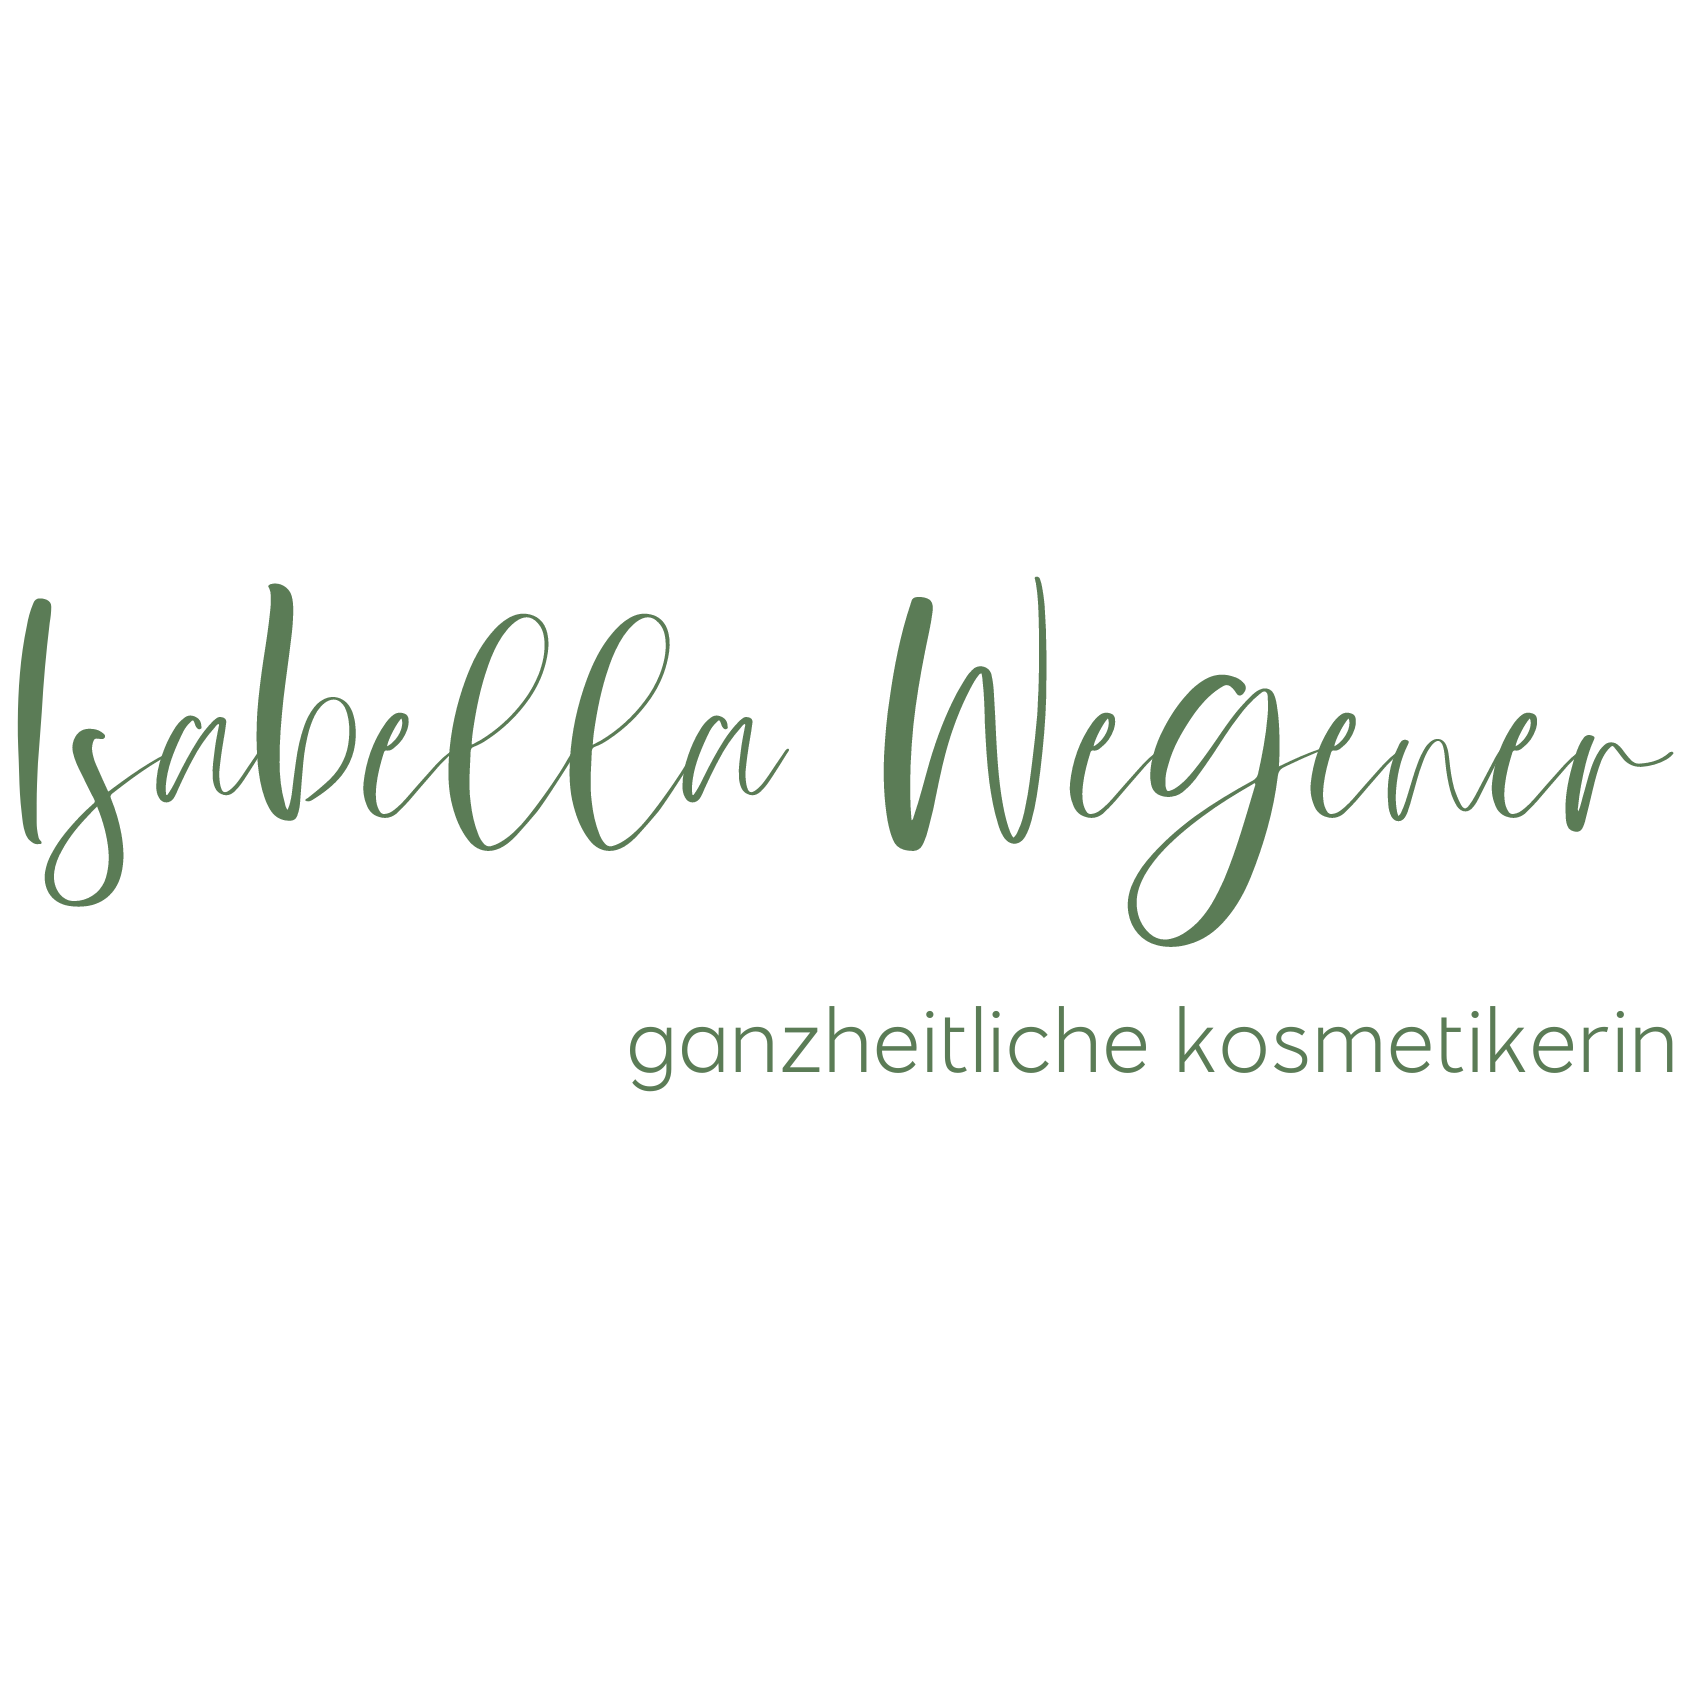 Praxis Isabella Wegener - Ganzheitliche Kosmetikerin in Obermeitingen - Logo